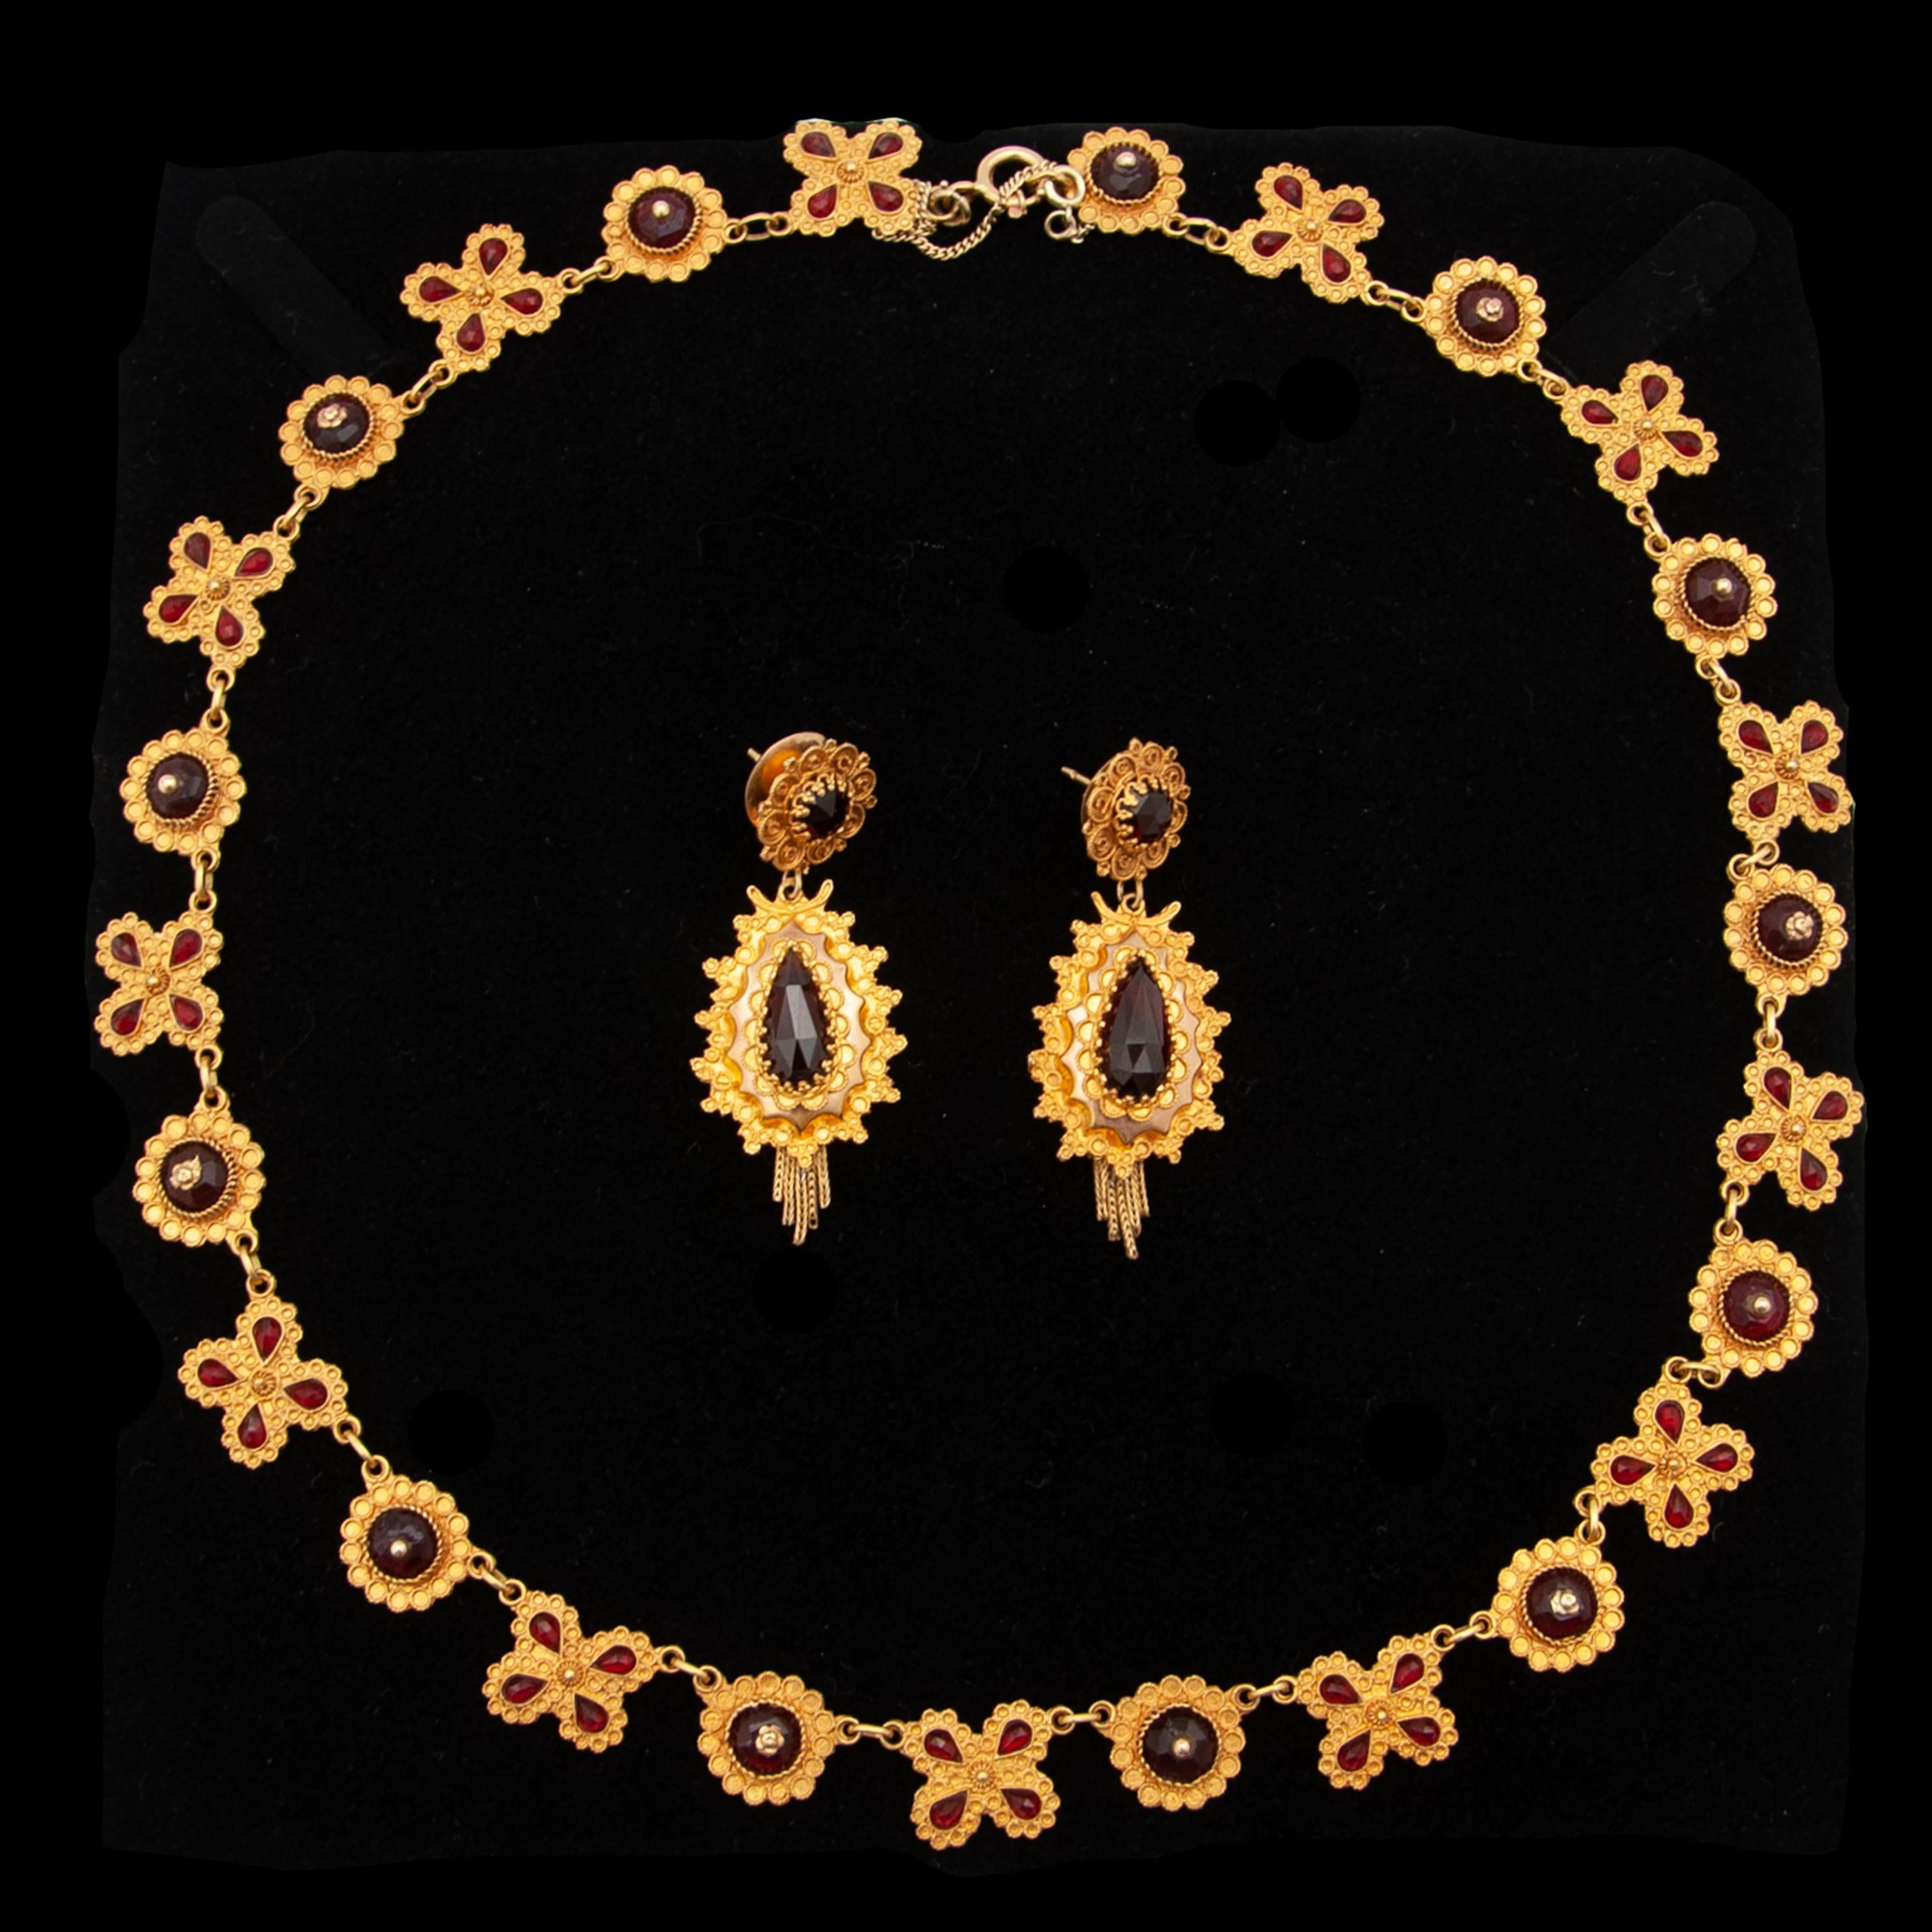 Magnifique parure ancienne en or du 19e siècle composée de boucles d'oreilles et d'un collier. Le design du collier est époustouflant. La chaîne du collier alterne avec une fleur d'or et une rosette. Les fleurs sont incrustées de quatre grenats en